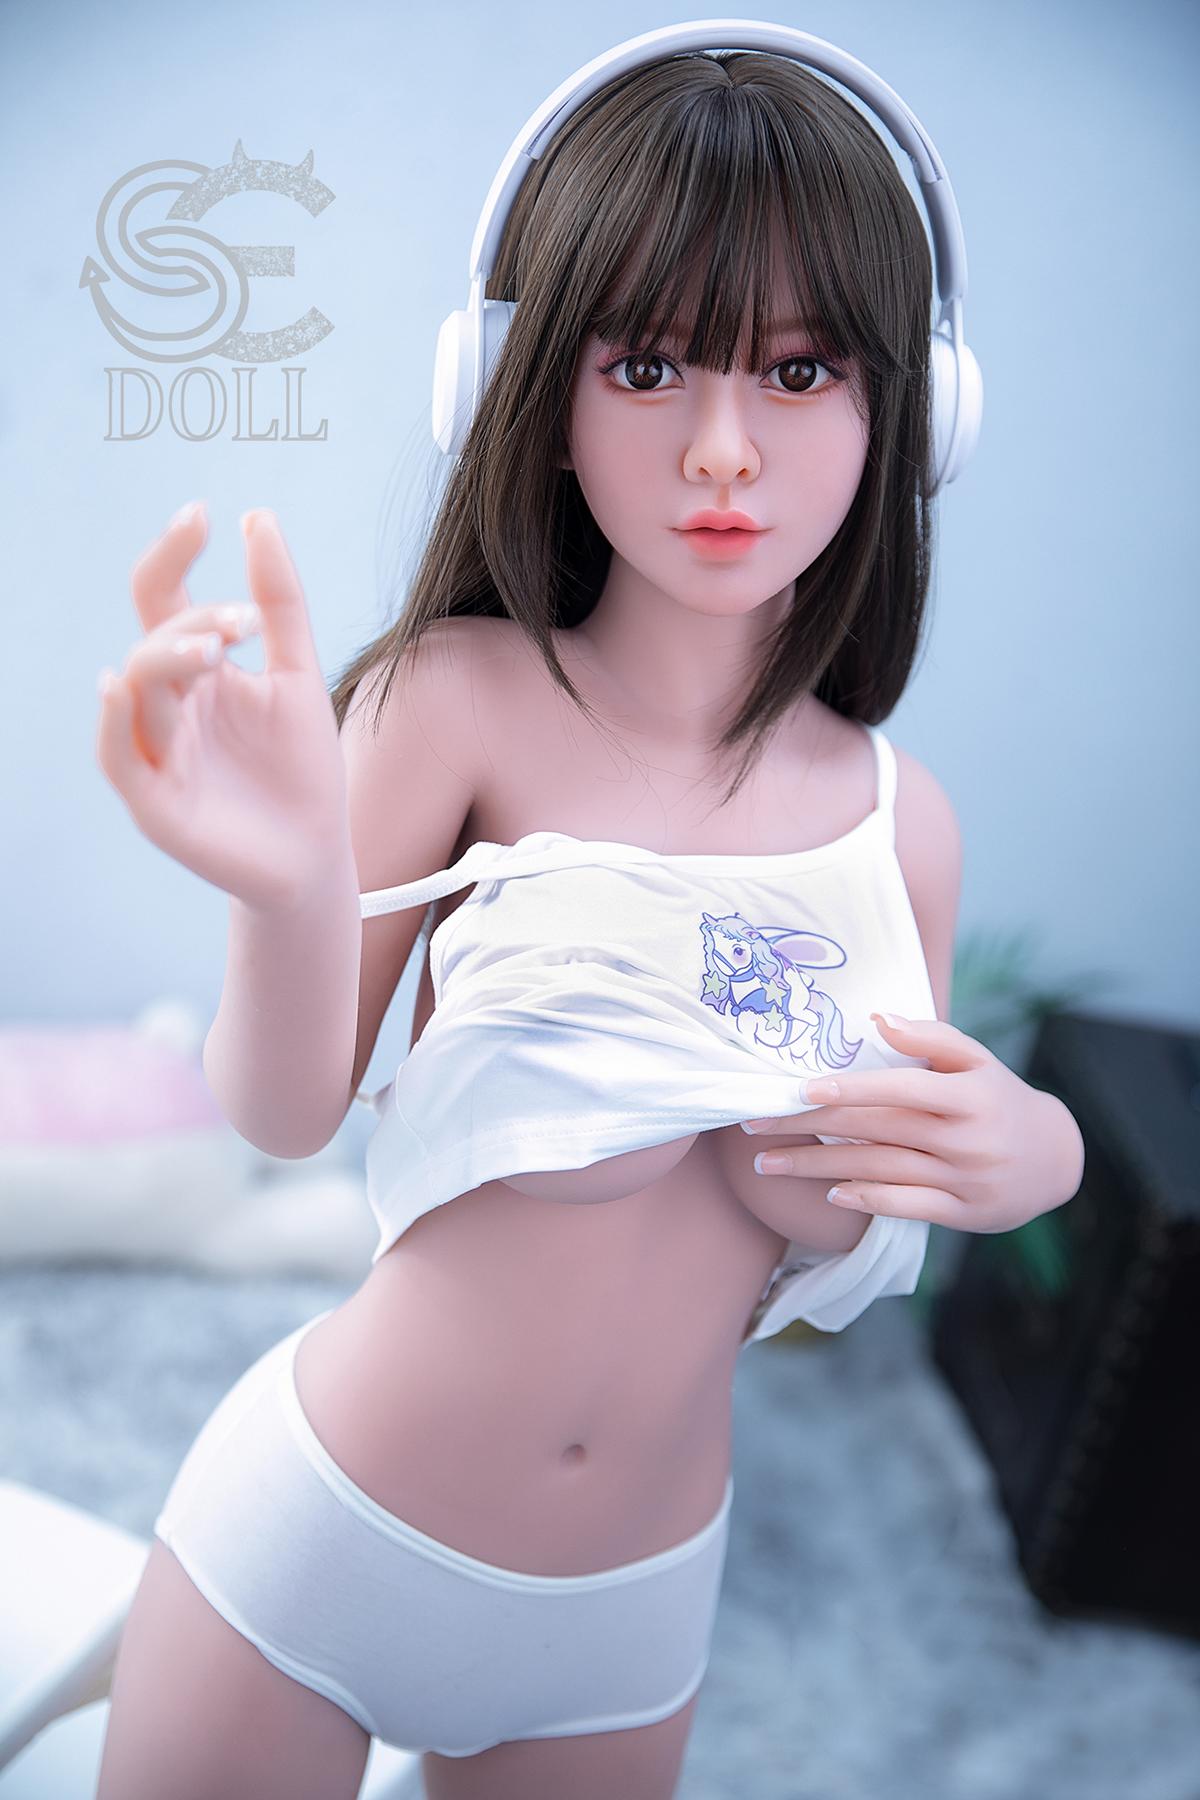 Teen Sex Doll Lija | Cute Asian Love Doll